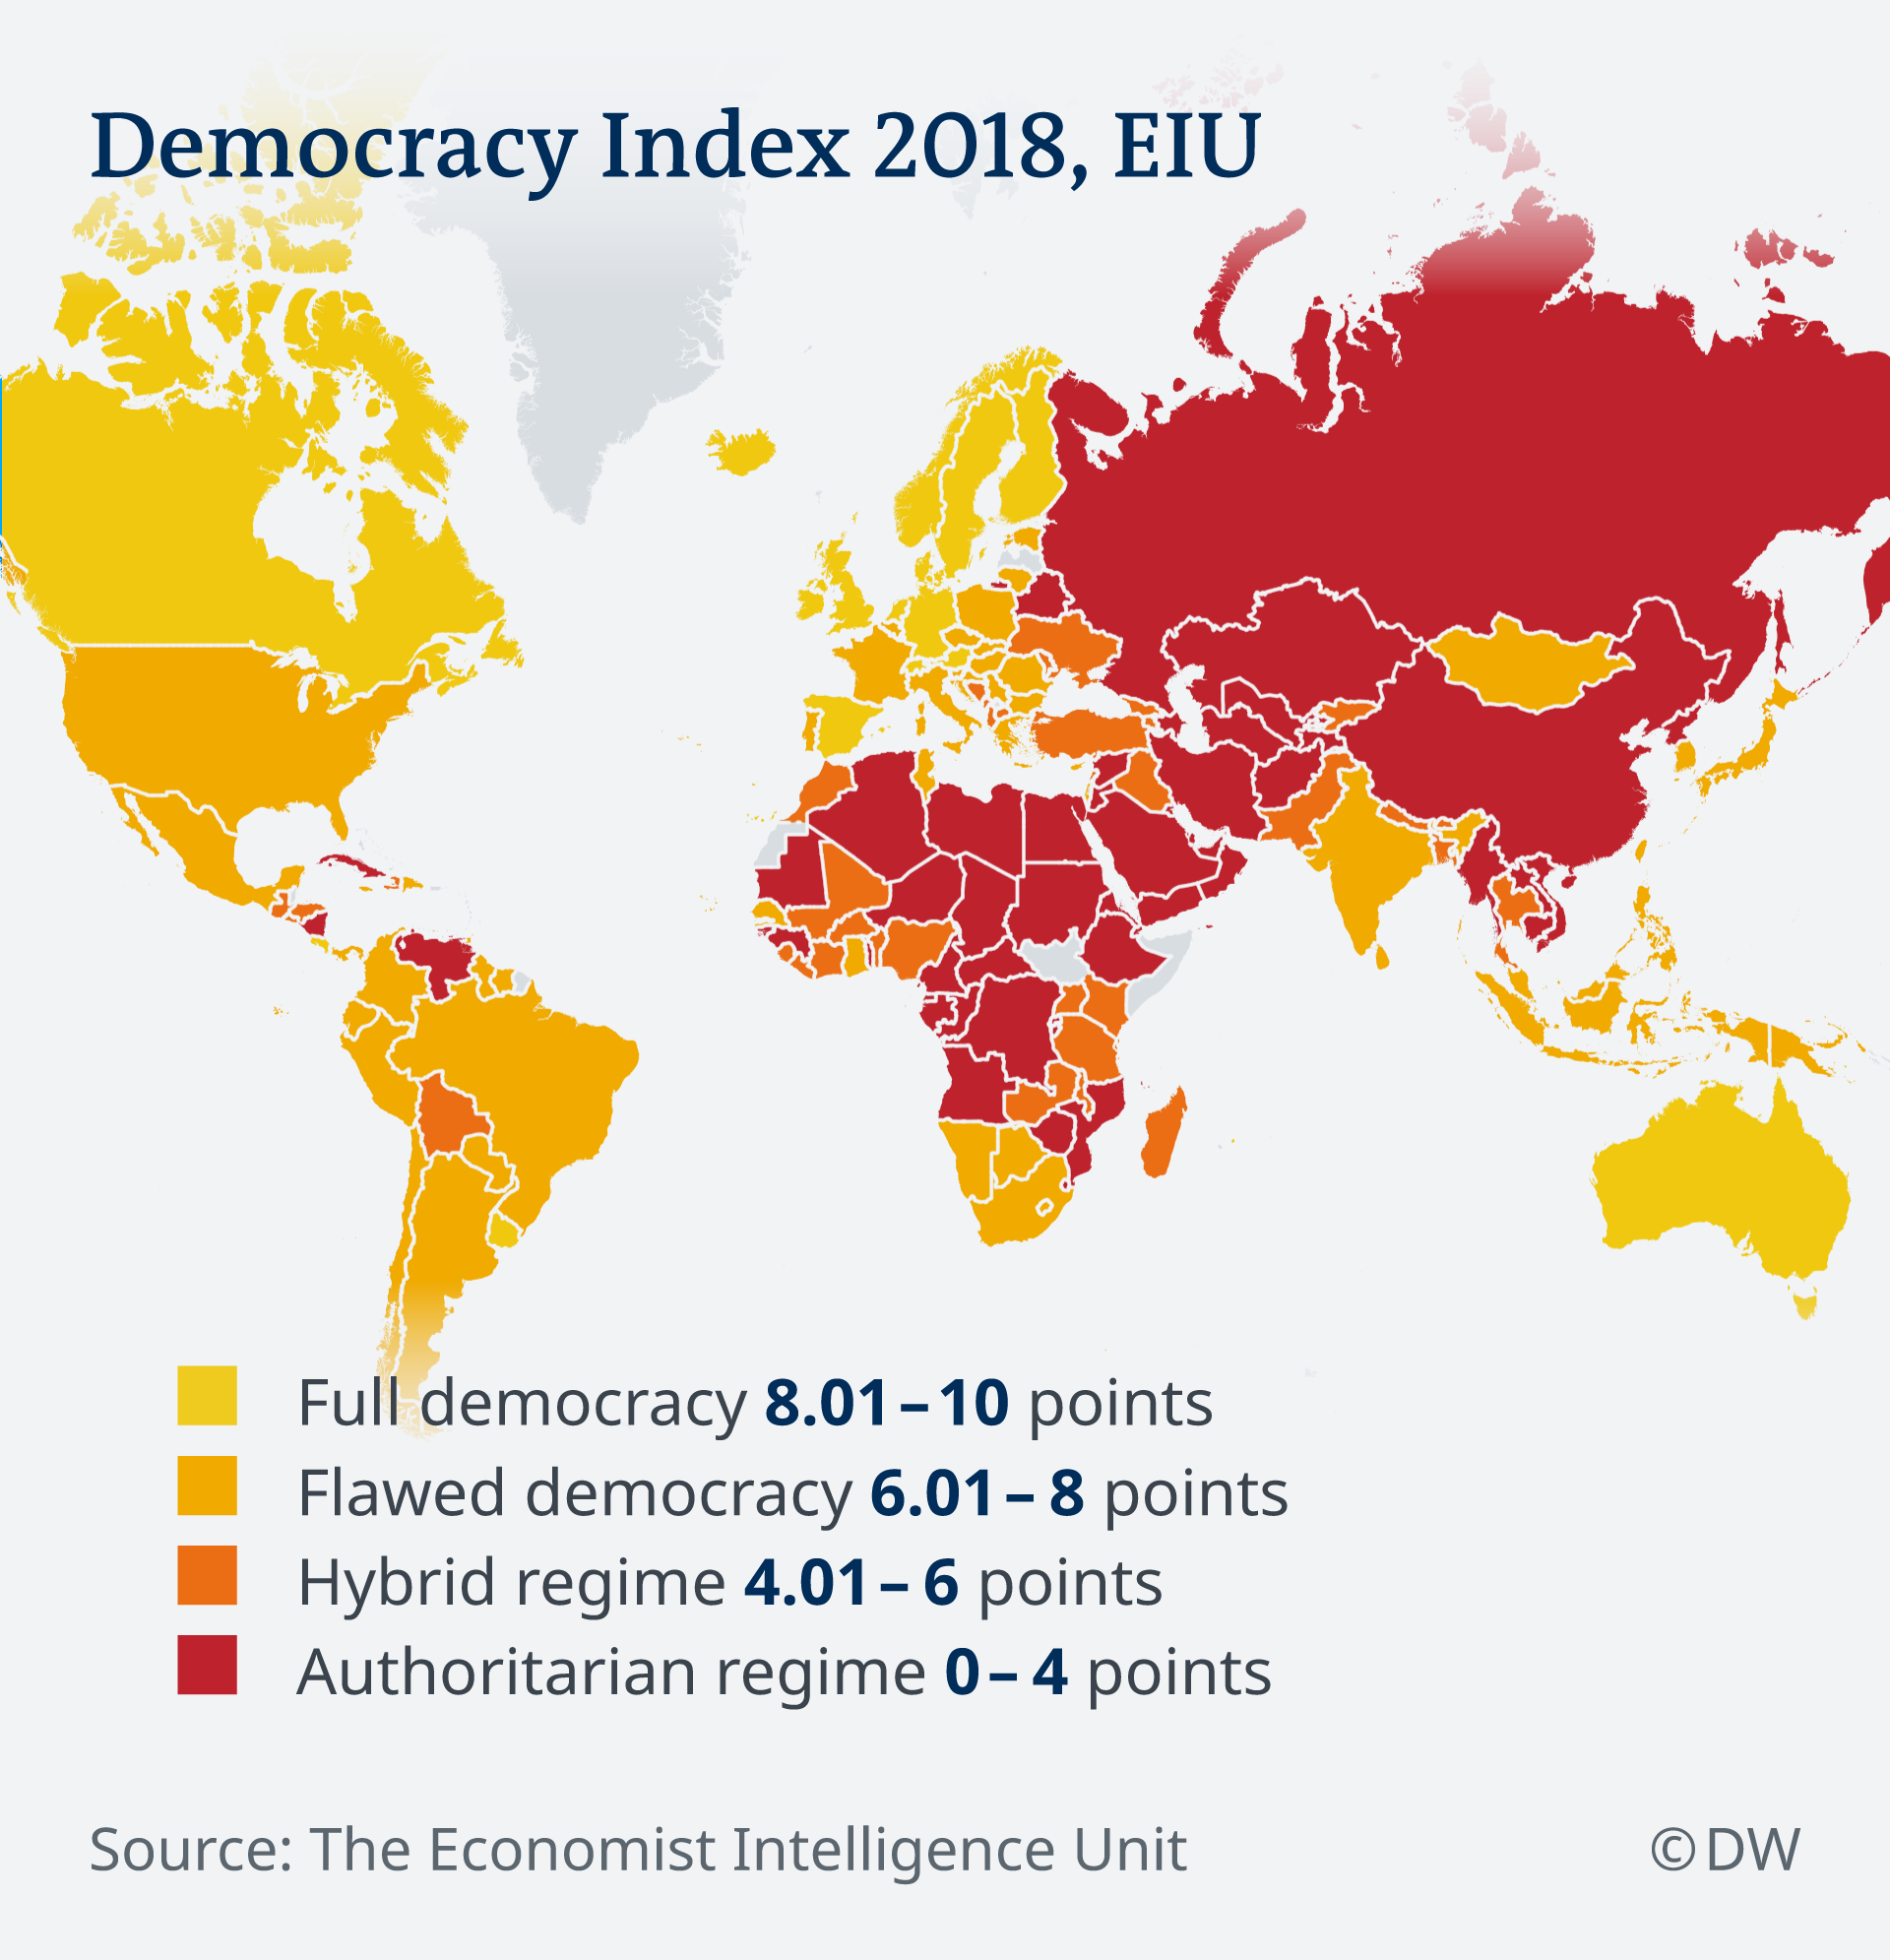 Karta svijeta prema indeksu demokracije - svjetlo žute su zemlje s potpunom demokracijom, tamno žute s nepotpunom demokracijom, narančasti s mješavinom demokracije i autoritarnog režima, a crvene s autoritarnim režimom